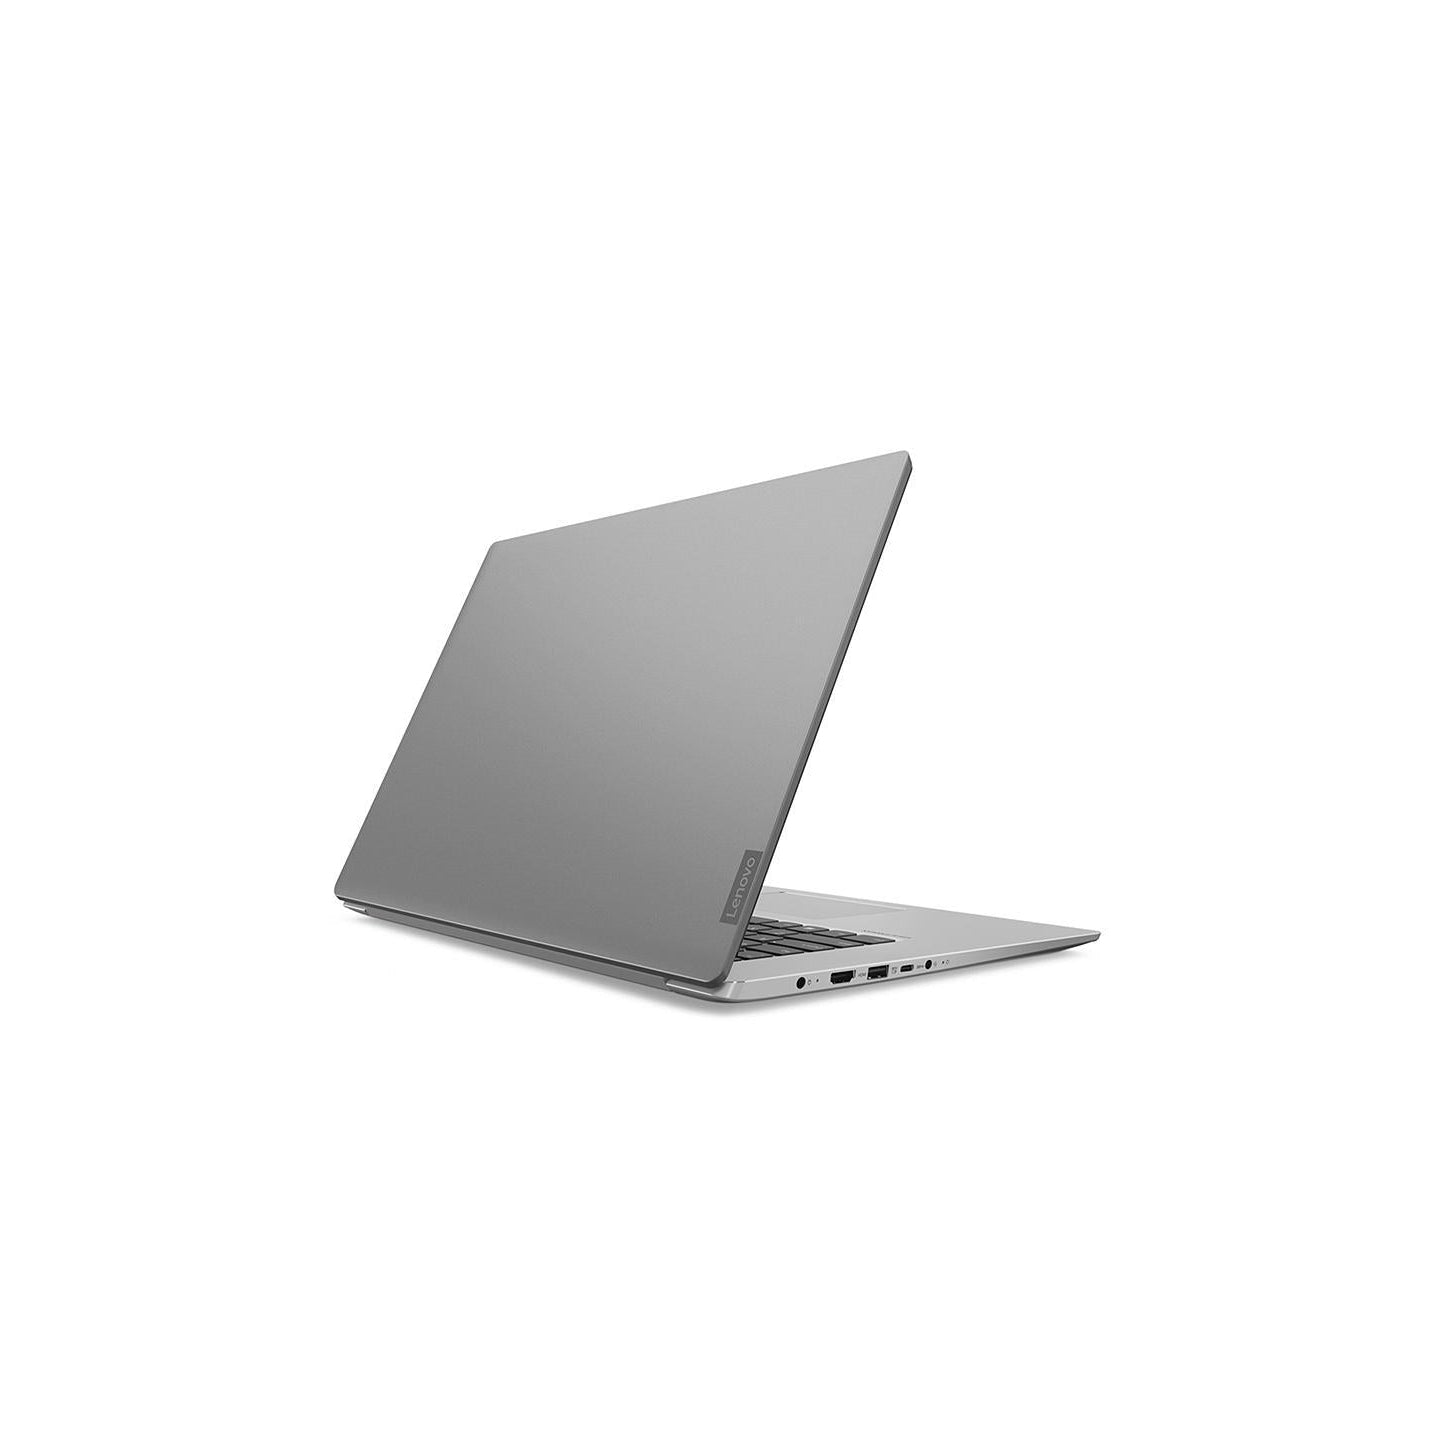 Lenovo IdeaPad 530S 81EV005CUK Laptop, Intel Core i5, 8GB RAM, 256GB SSD, 15.6” Full HD, Mineral Grey